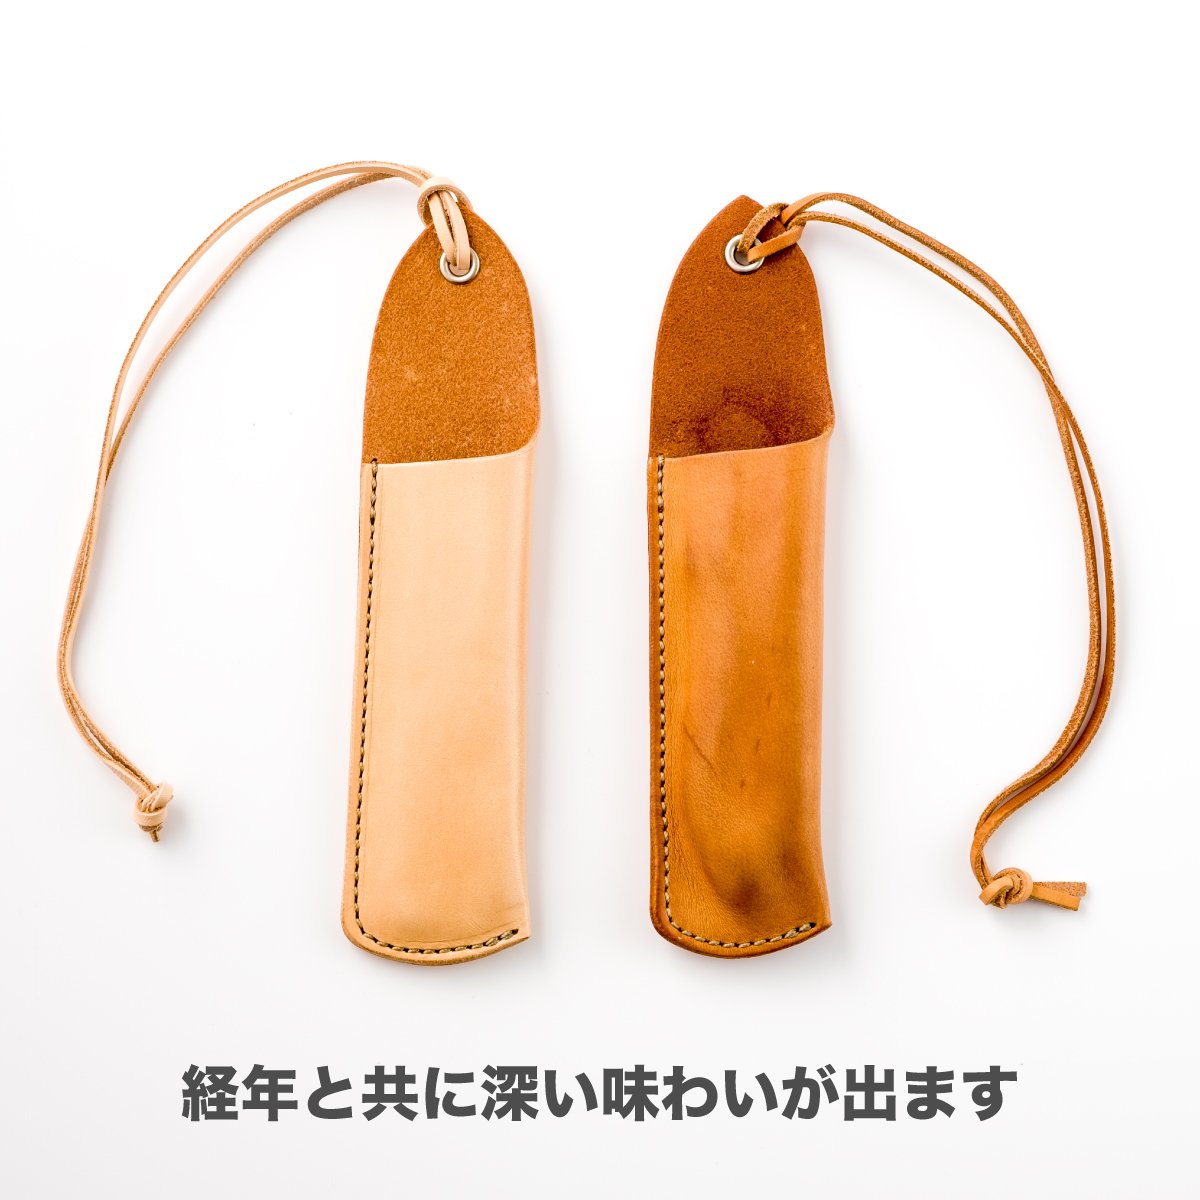 折畳式料理ナイフSolo プレーンブラック (ステンレス鋼/銀紙三号) 9,900円